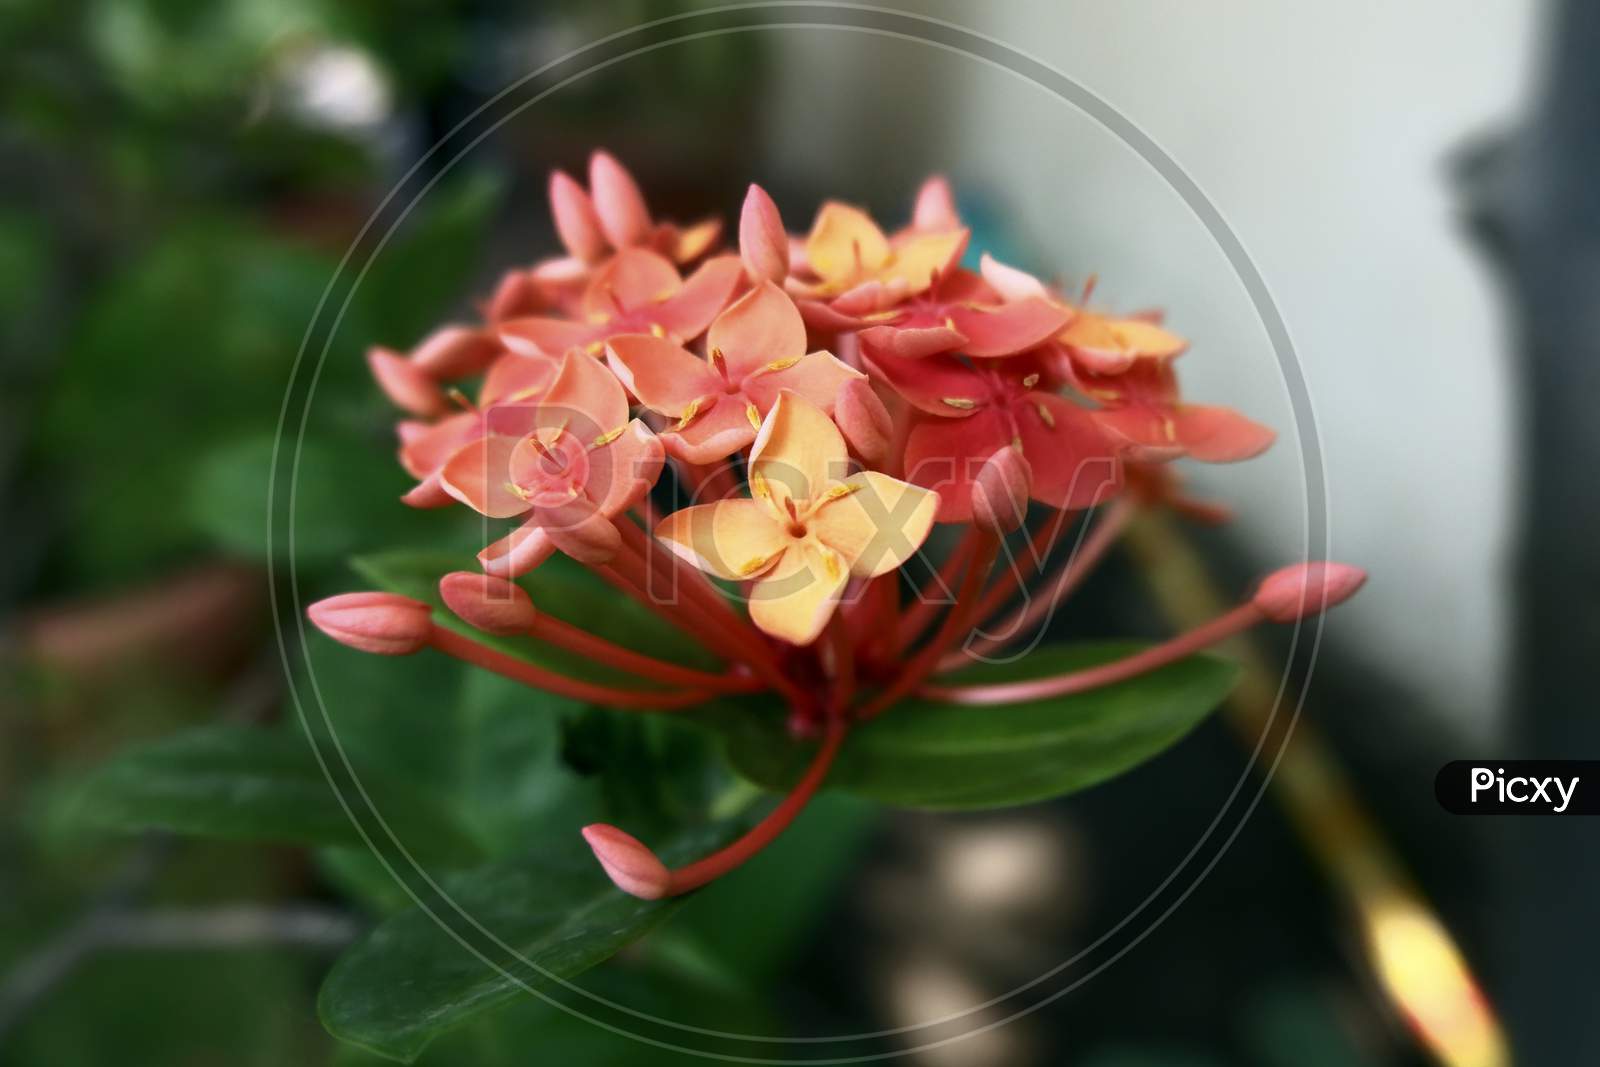 Ixora coccinea red Jungle geranium flower with buds